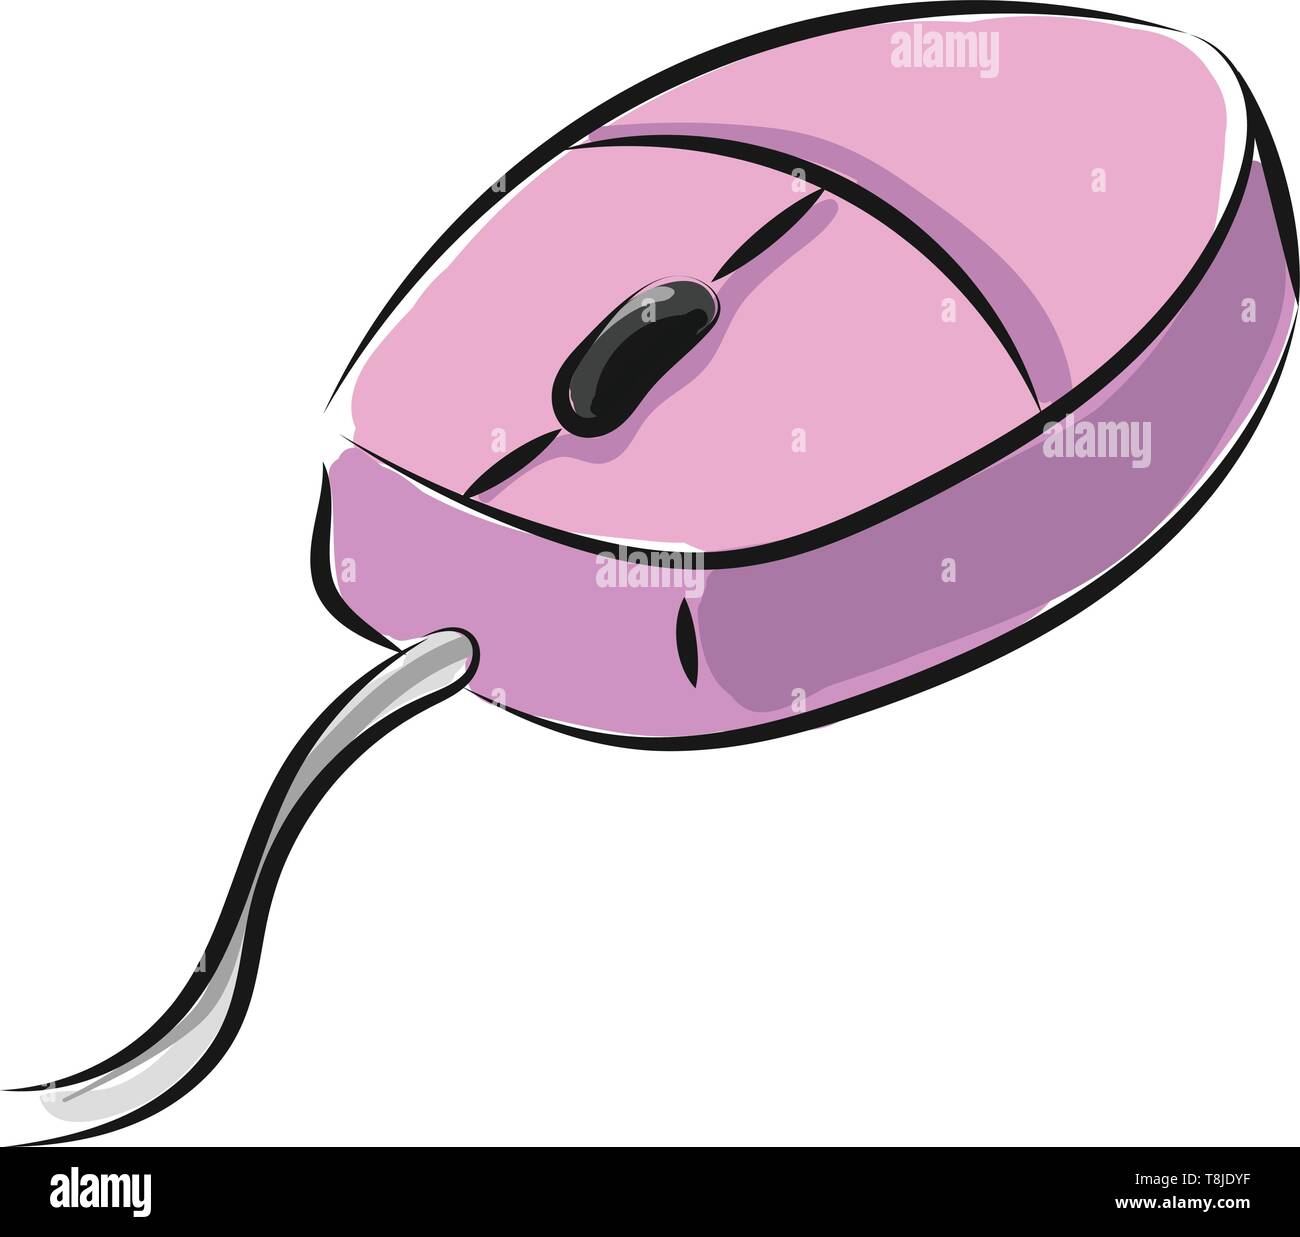 Una colorazione rosa mouse con un filo attaccato ad esso e una manopola  sulla parte superiore per essere utilizzata con un computer. Di colore rosa  appositamente per le ragazze, il vettore, il